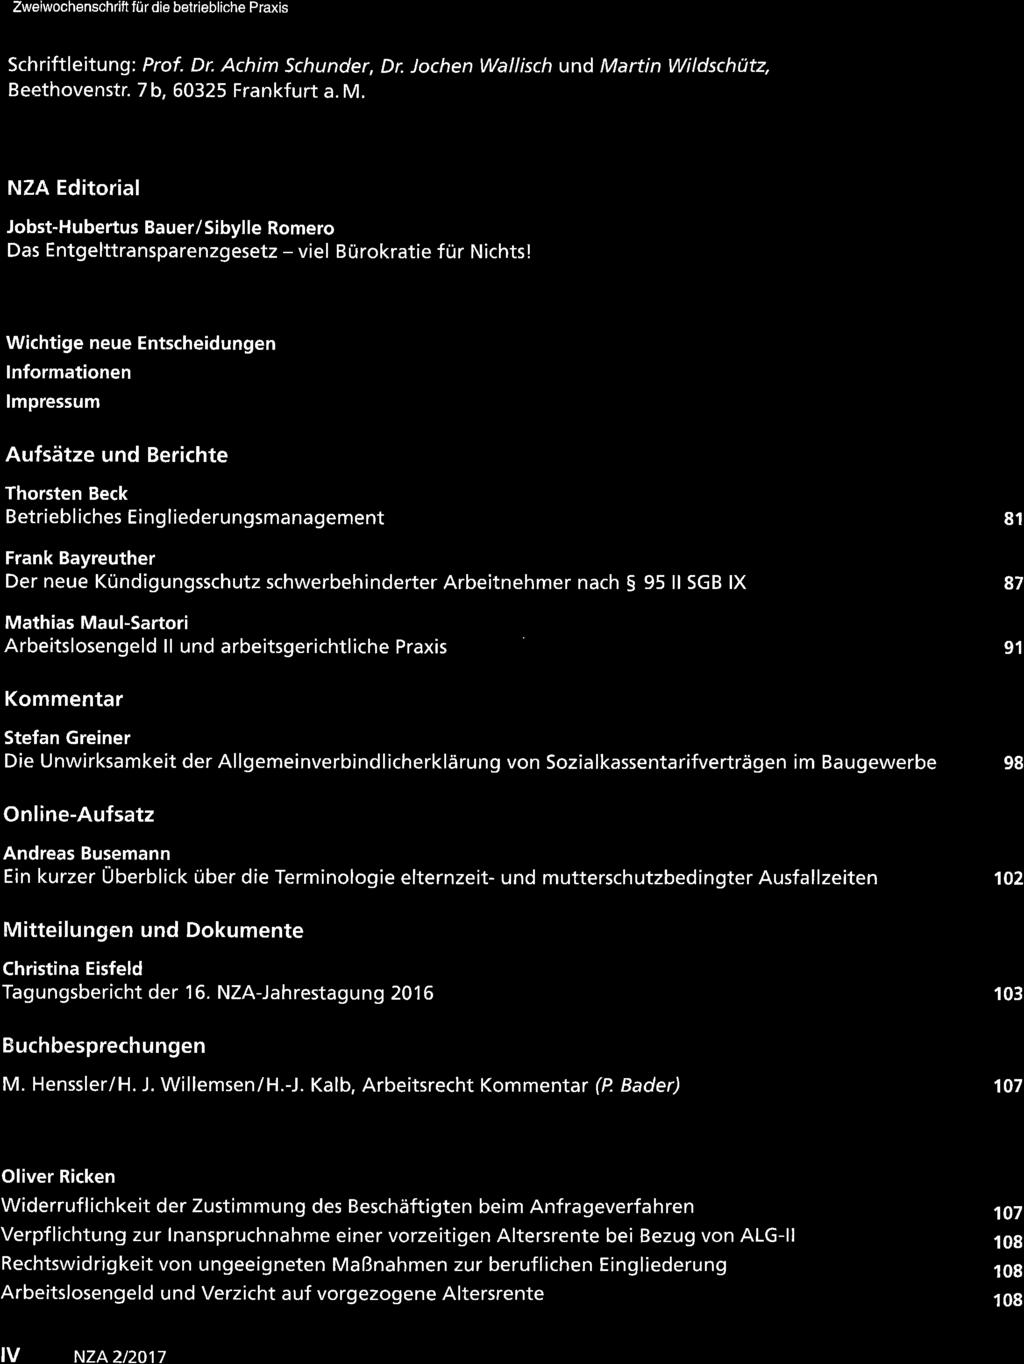 : Icue Zcitschrift für Arbcit rccht Zweiwochenschrift für die belriebliche Praxis xza Schriftleitung: Prof. Dr. Achim Schunder, Dr. Jochen Wallisch und Martin Wildschütz, Beethovenstr.